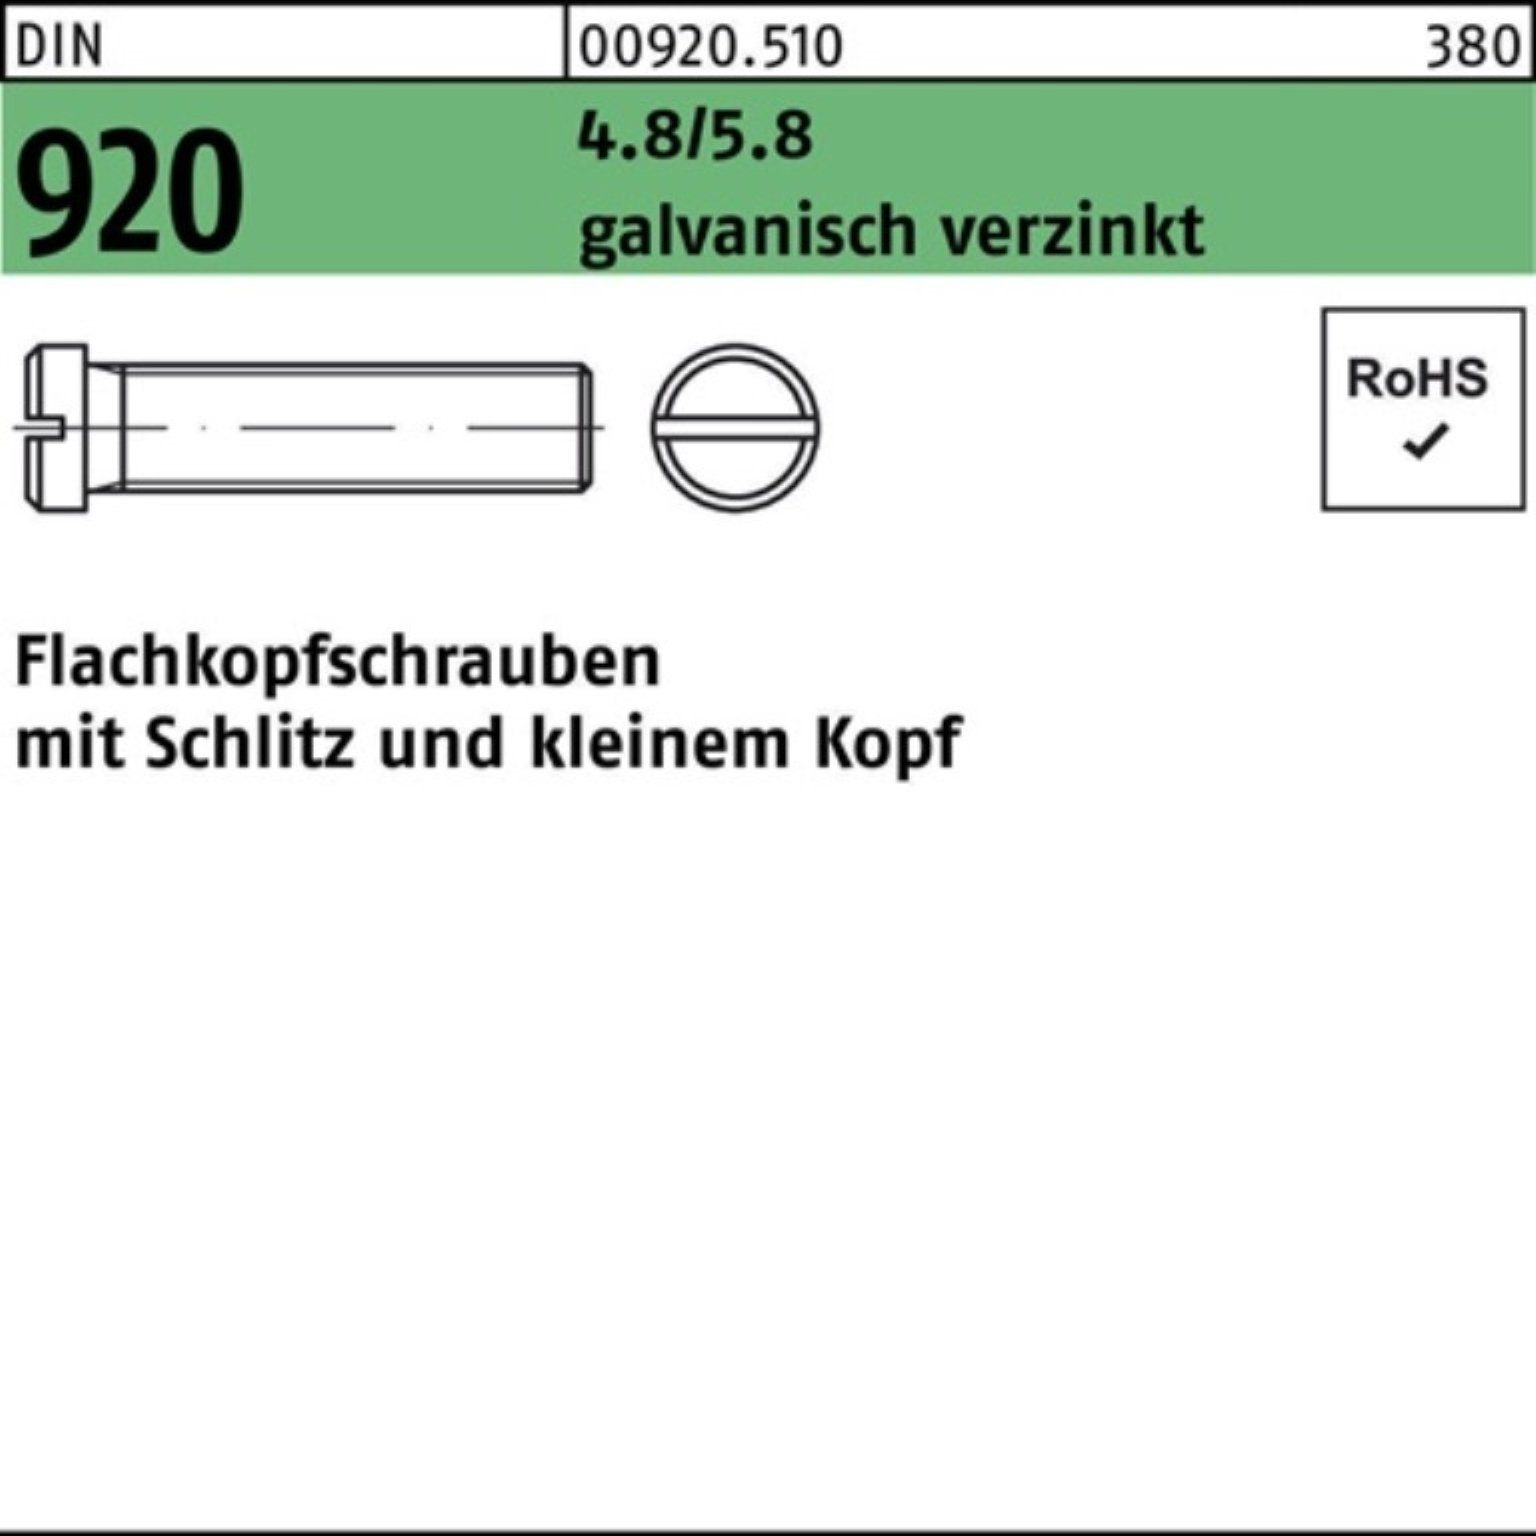 Reyher Schraube 920 100er 10 DIN Schlitz galv.verz. 4.8/5.8 Flachkopfschraube Pack M3x